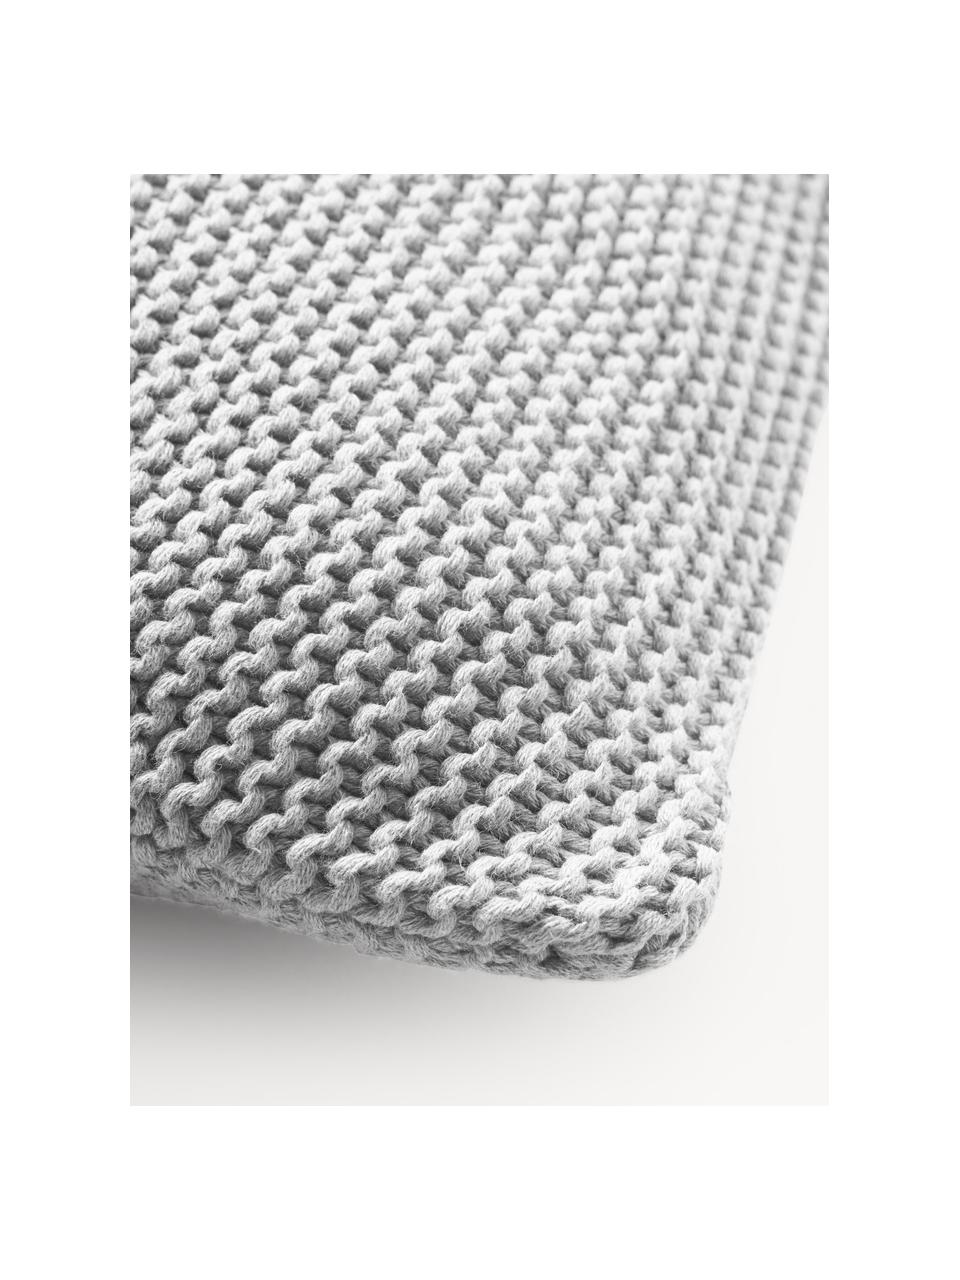 Copricuscino a maglia in cotone organico Adalyn, 100% cotone organico certificato GOTS, Grigio, Larg. 40 x Lung. 40 cm